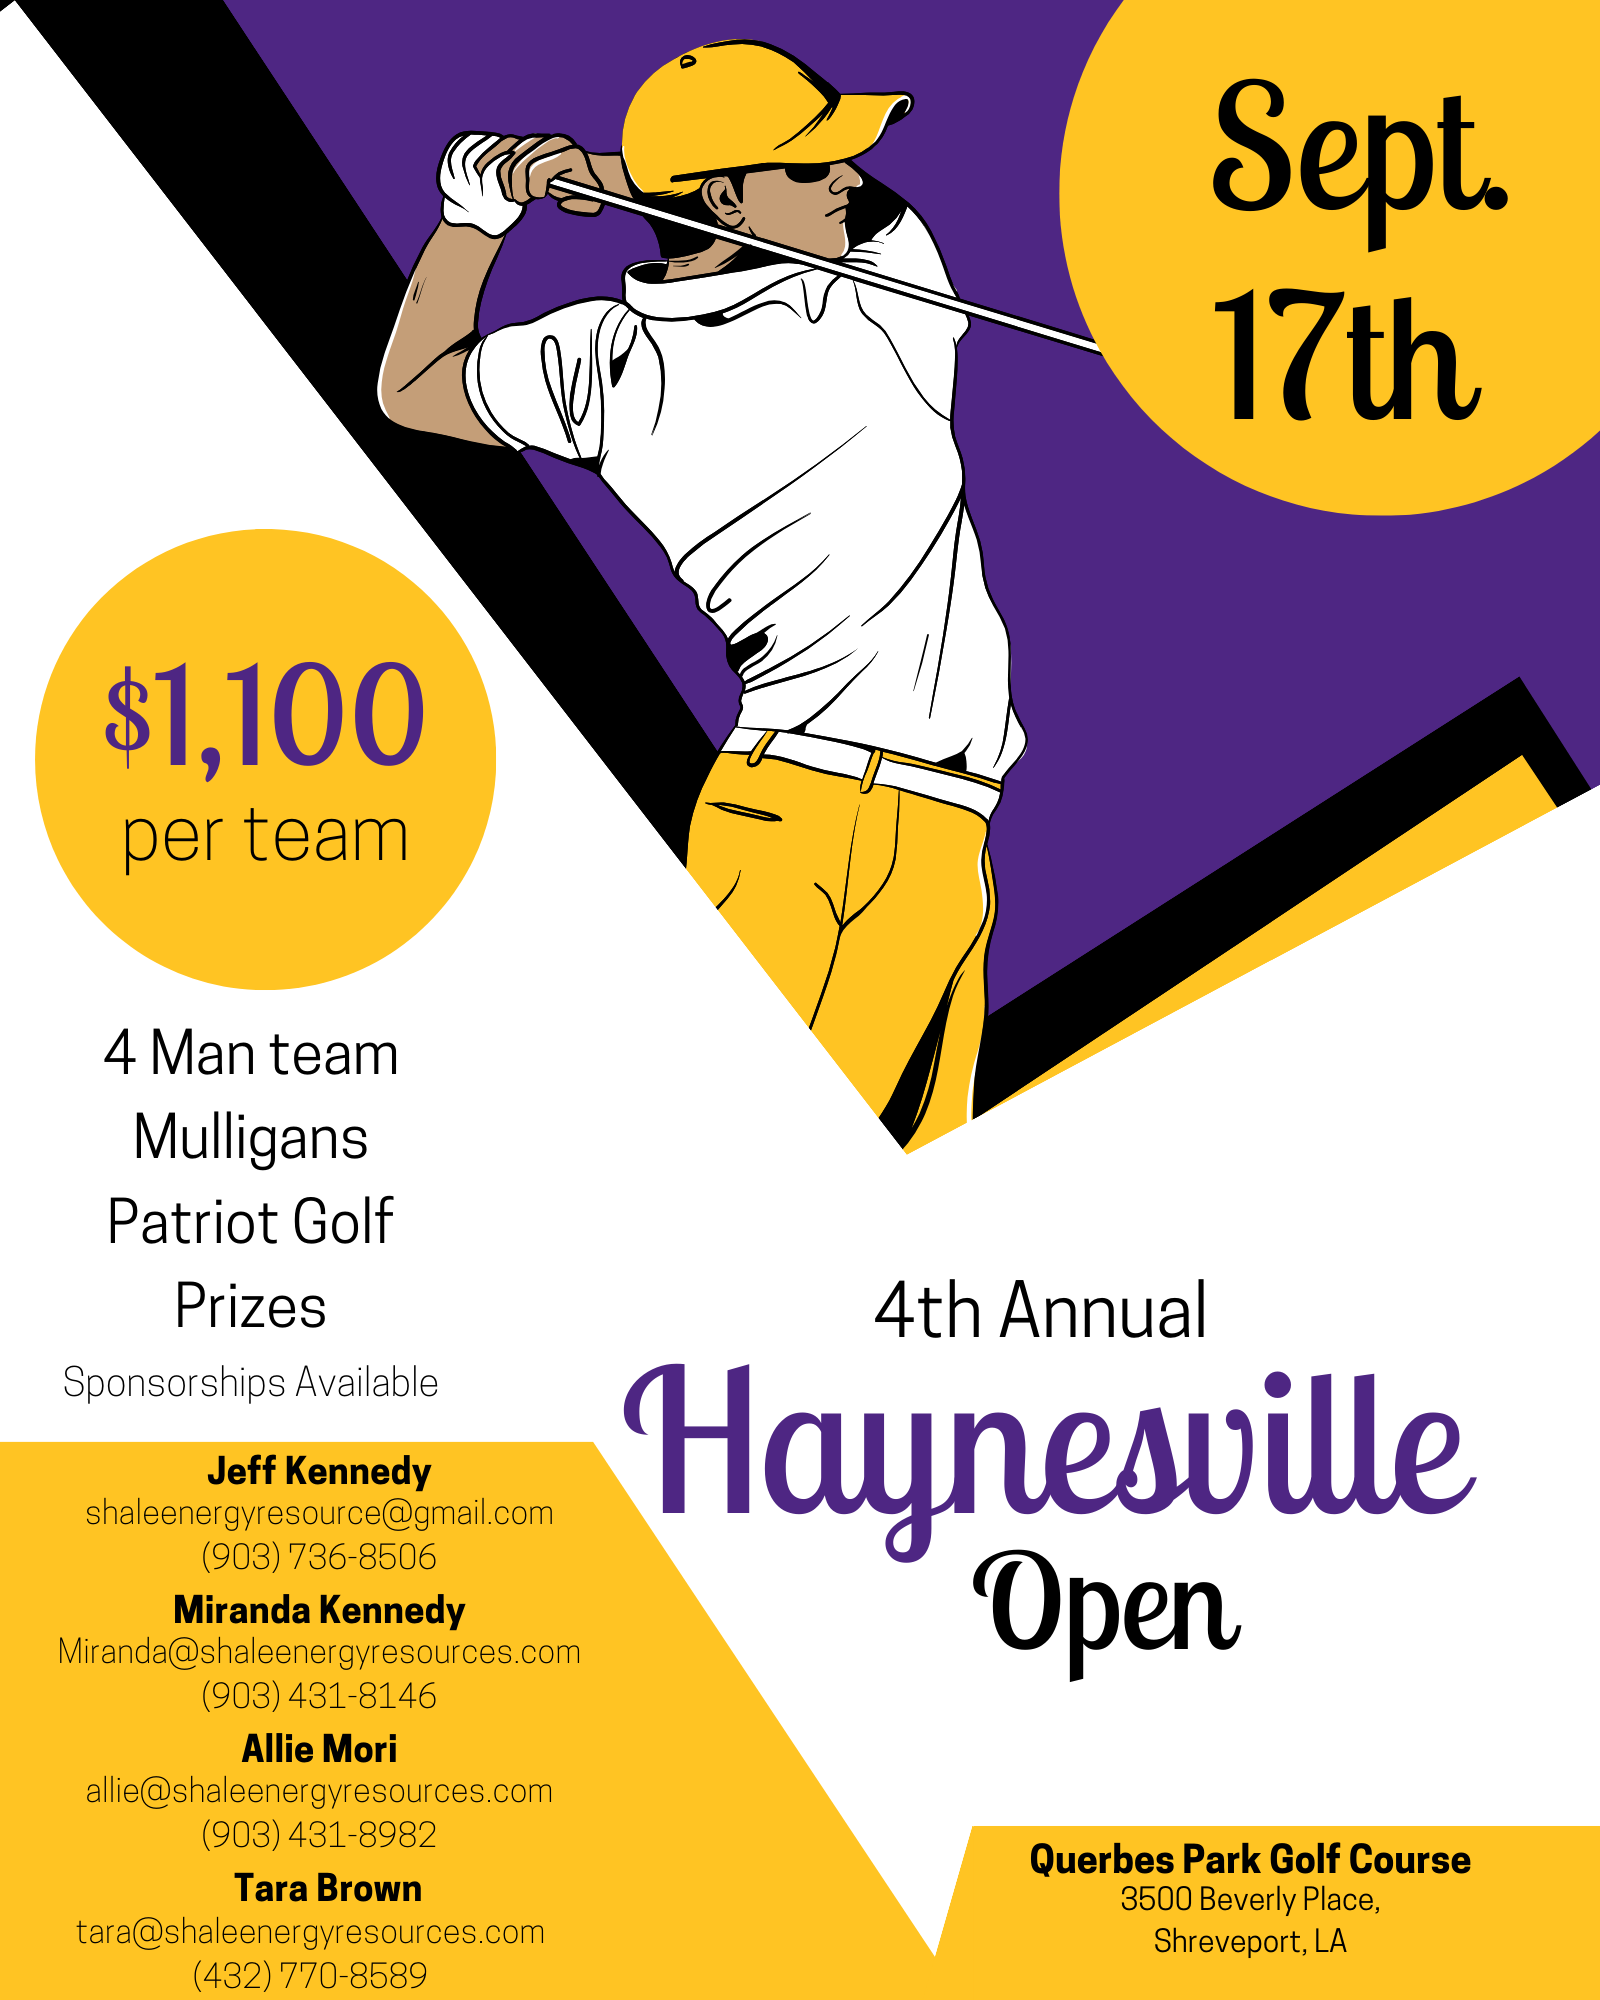 Haynesville Open